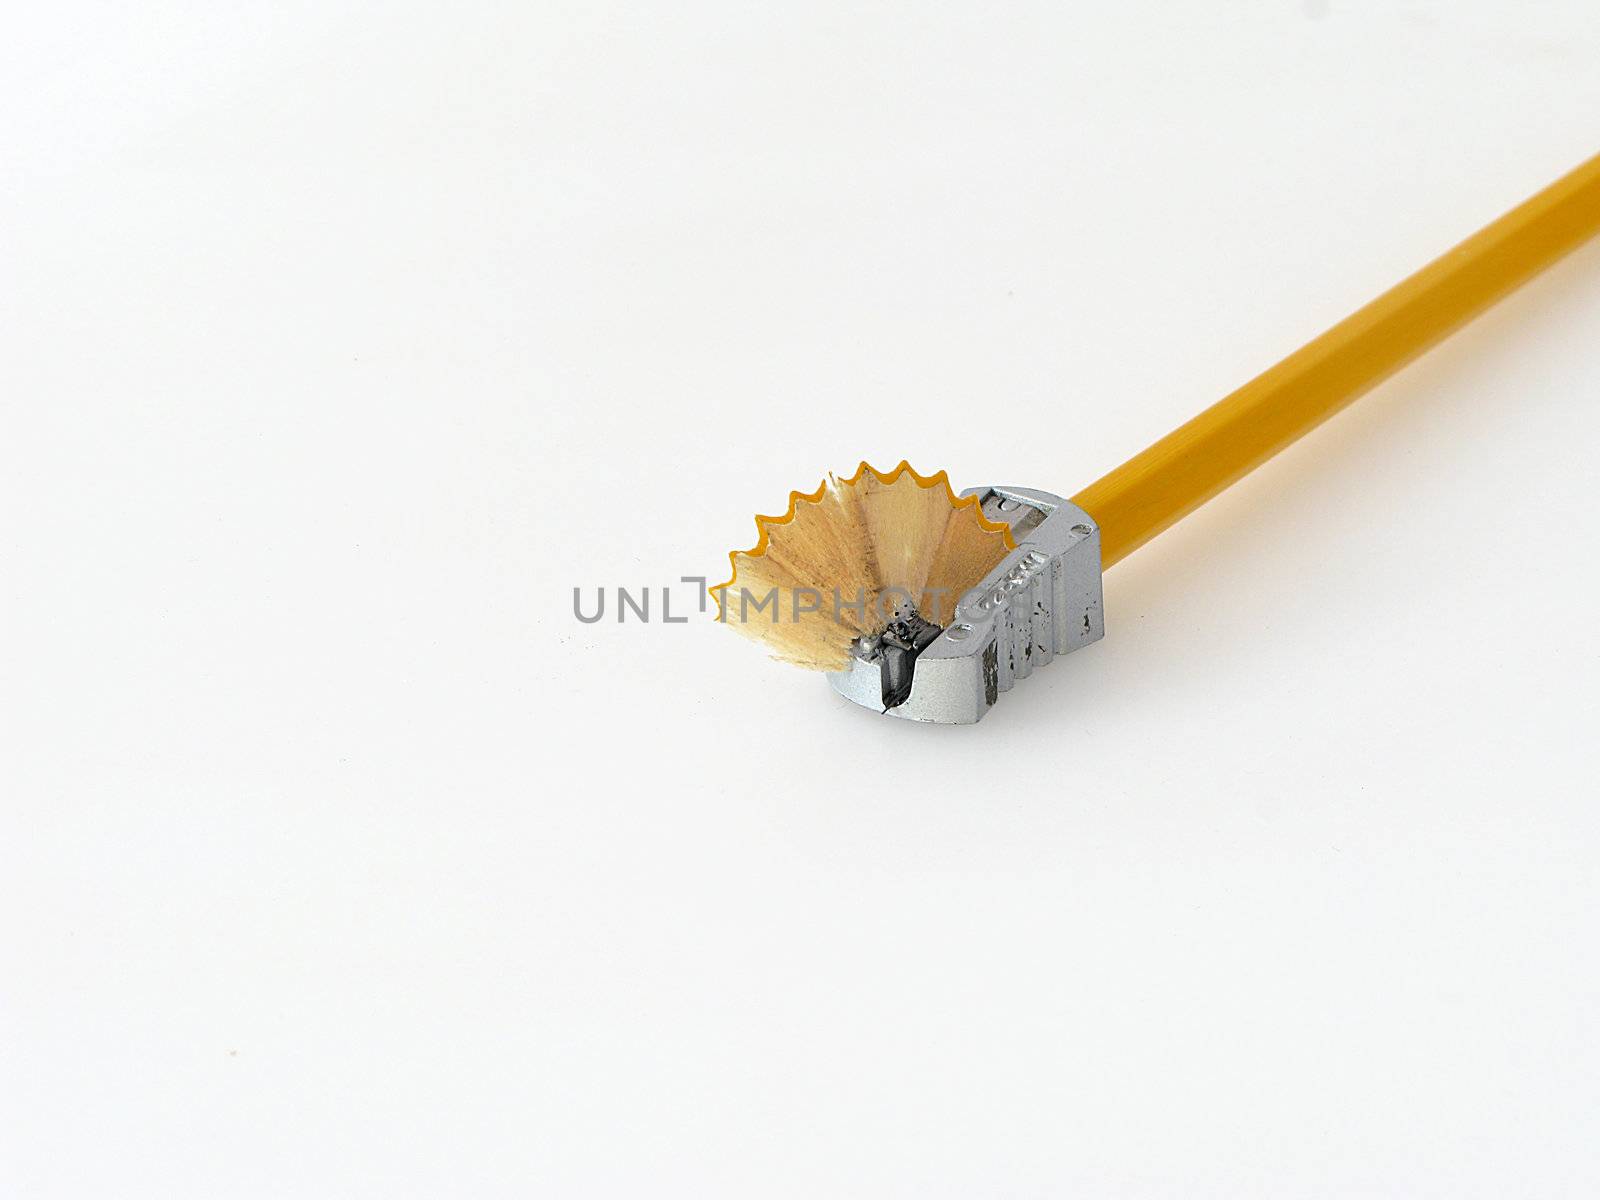 pencil with sharpener by matteobragaglio